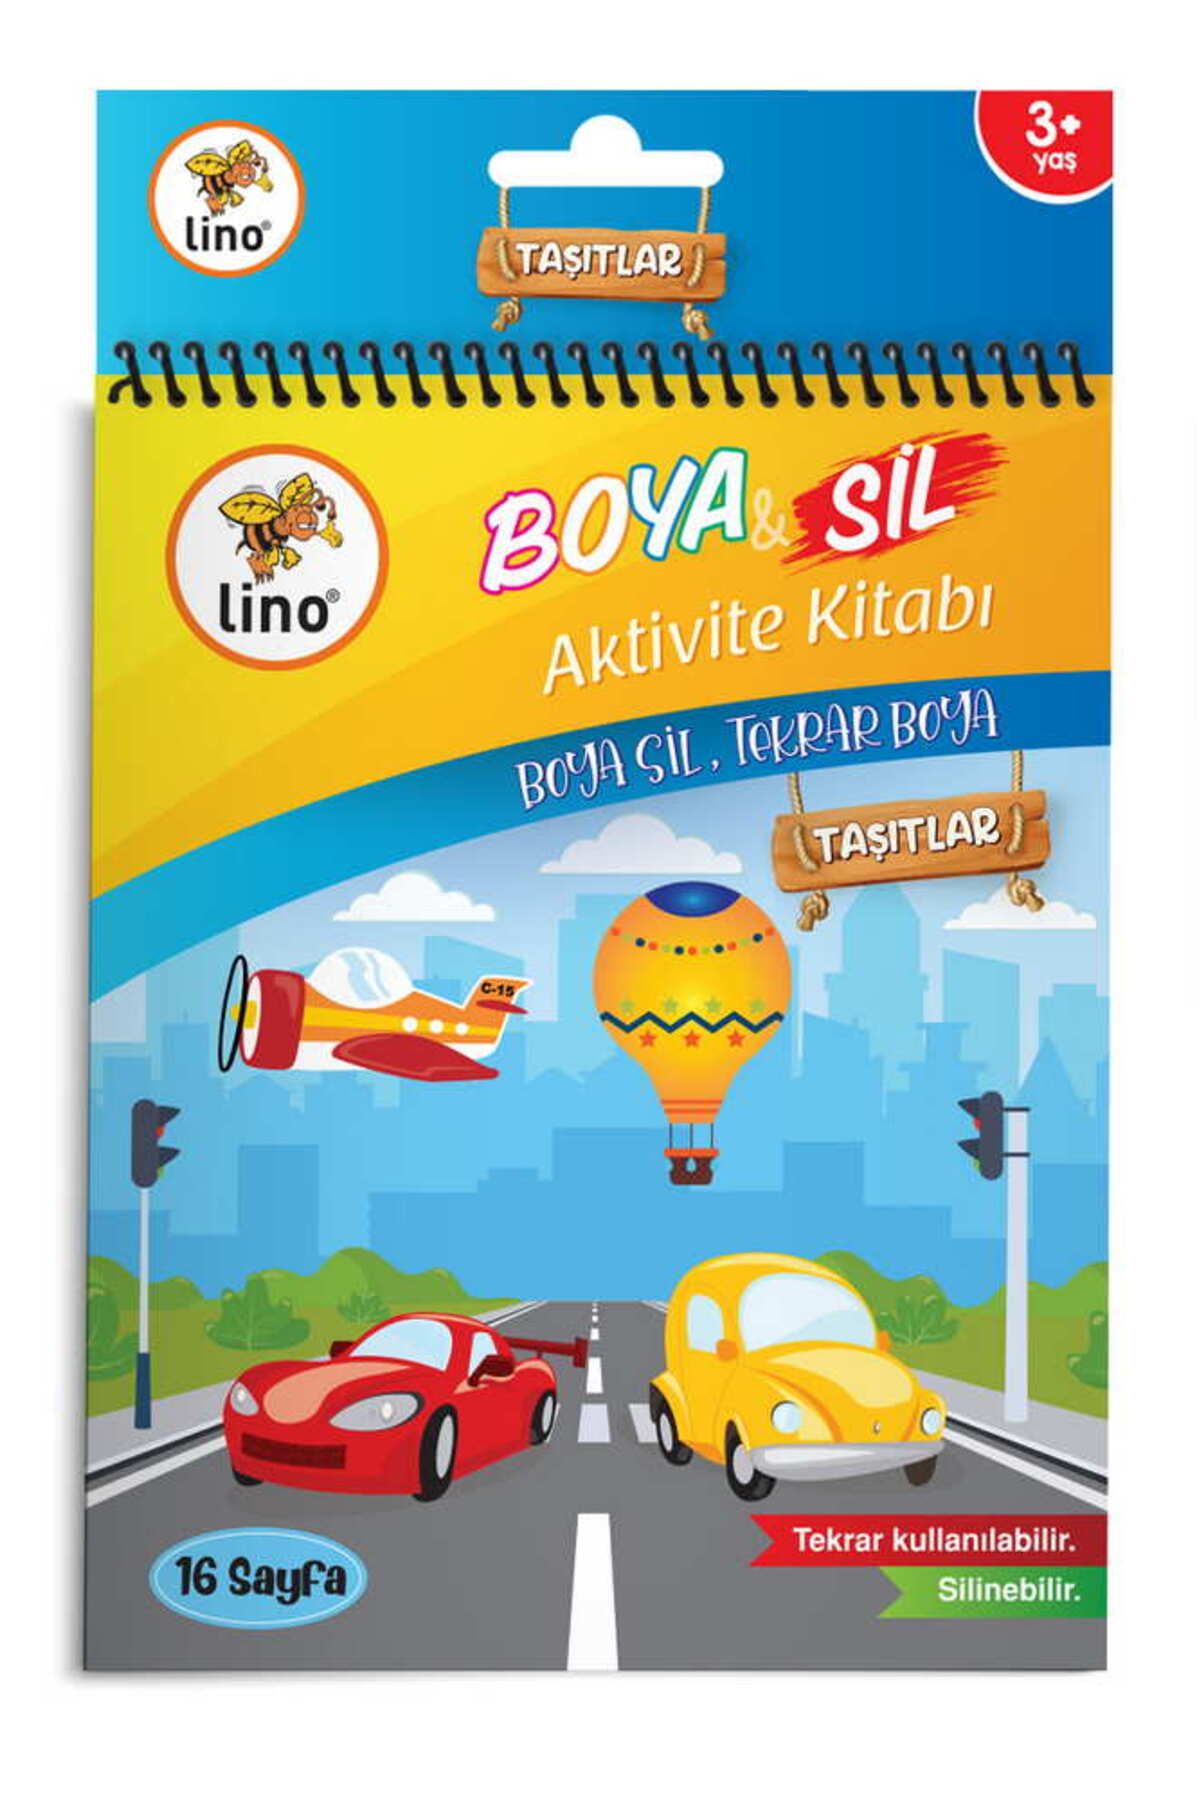 Lino Boya Sil Aktivite Boyama Kitabı Araçlar A5 Ebat (SİLİNEBİLİR)